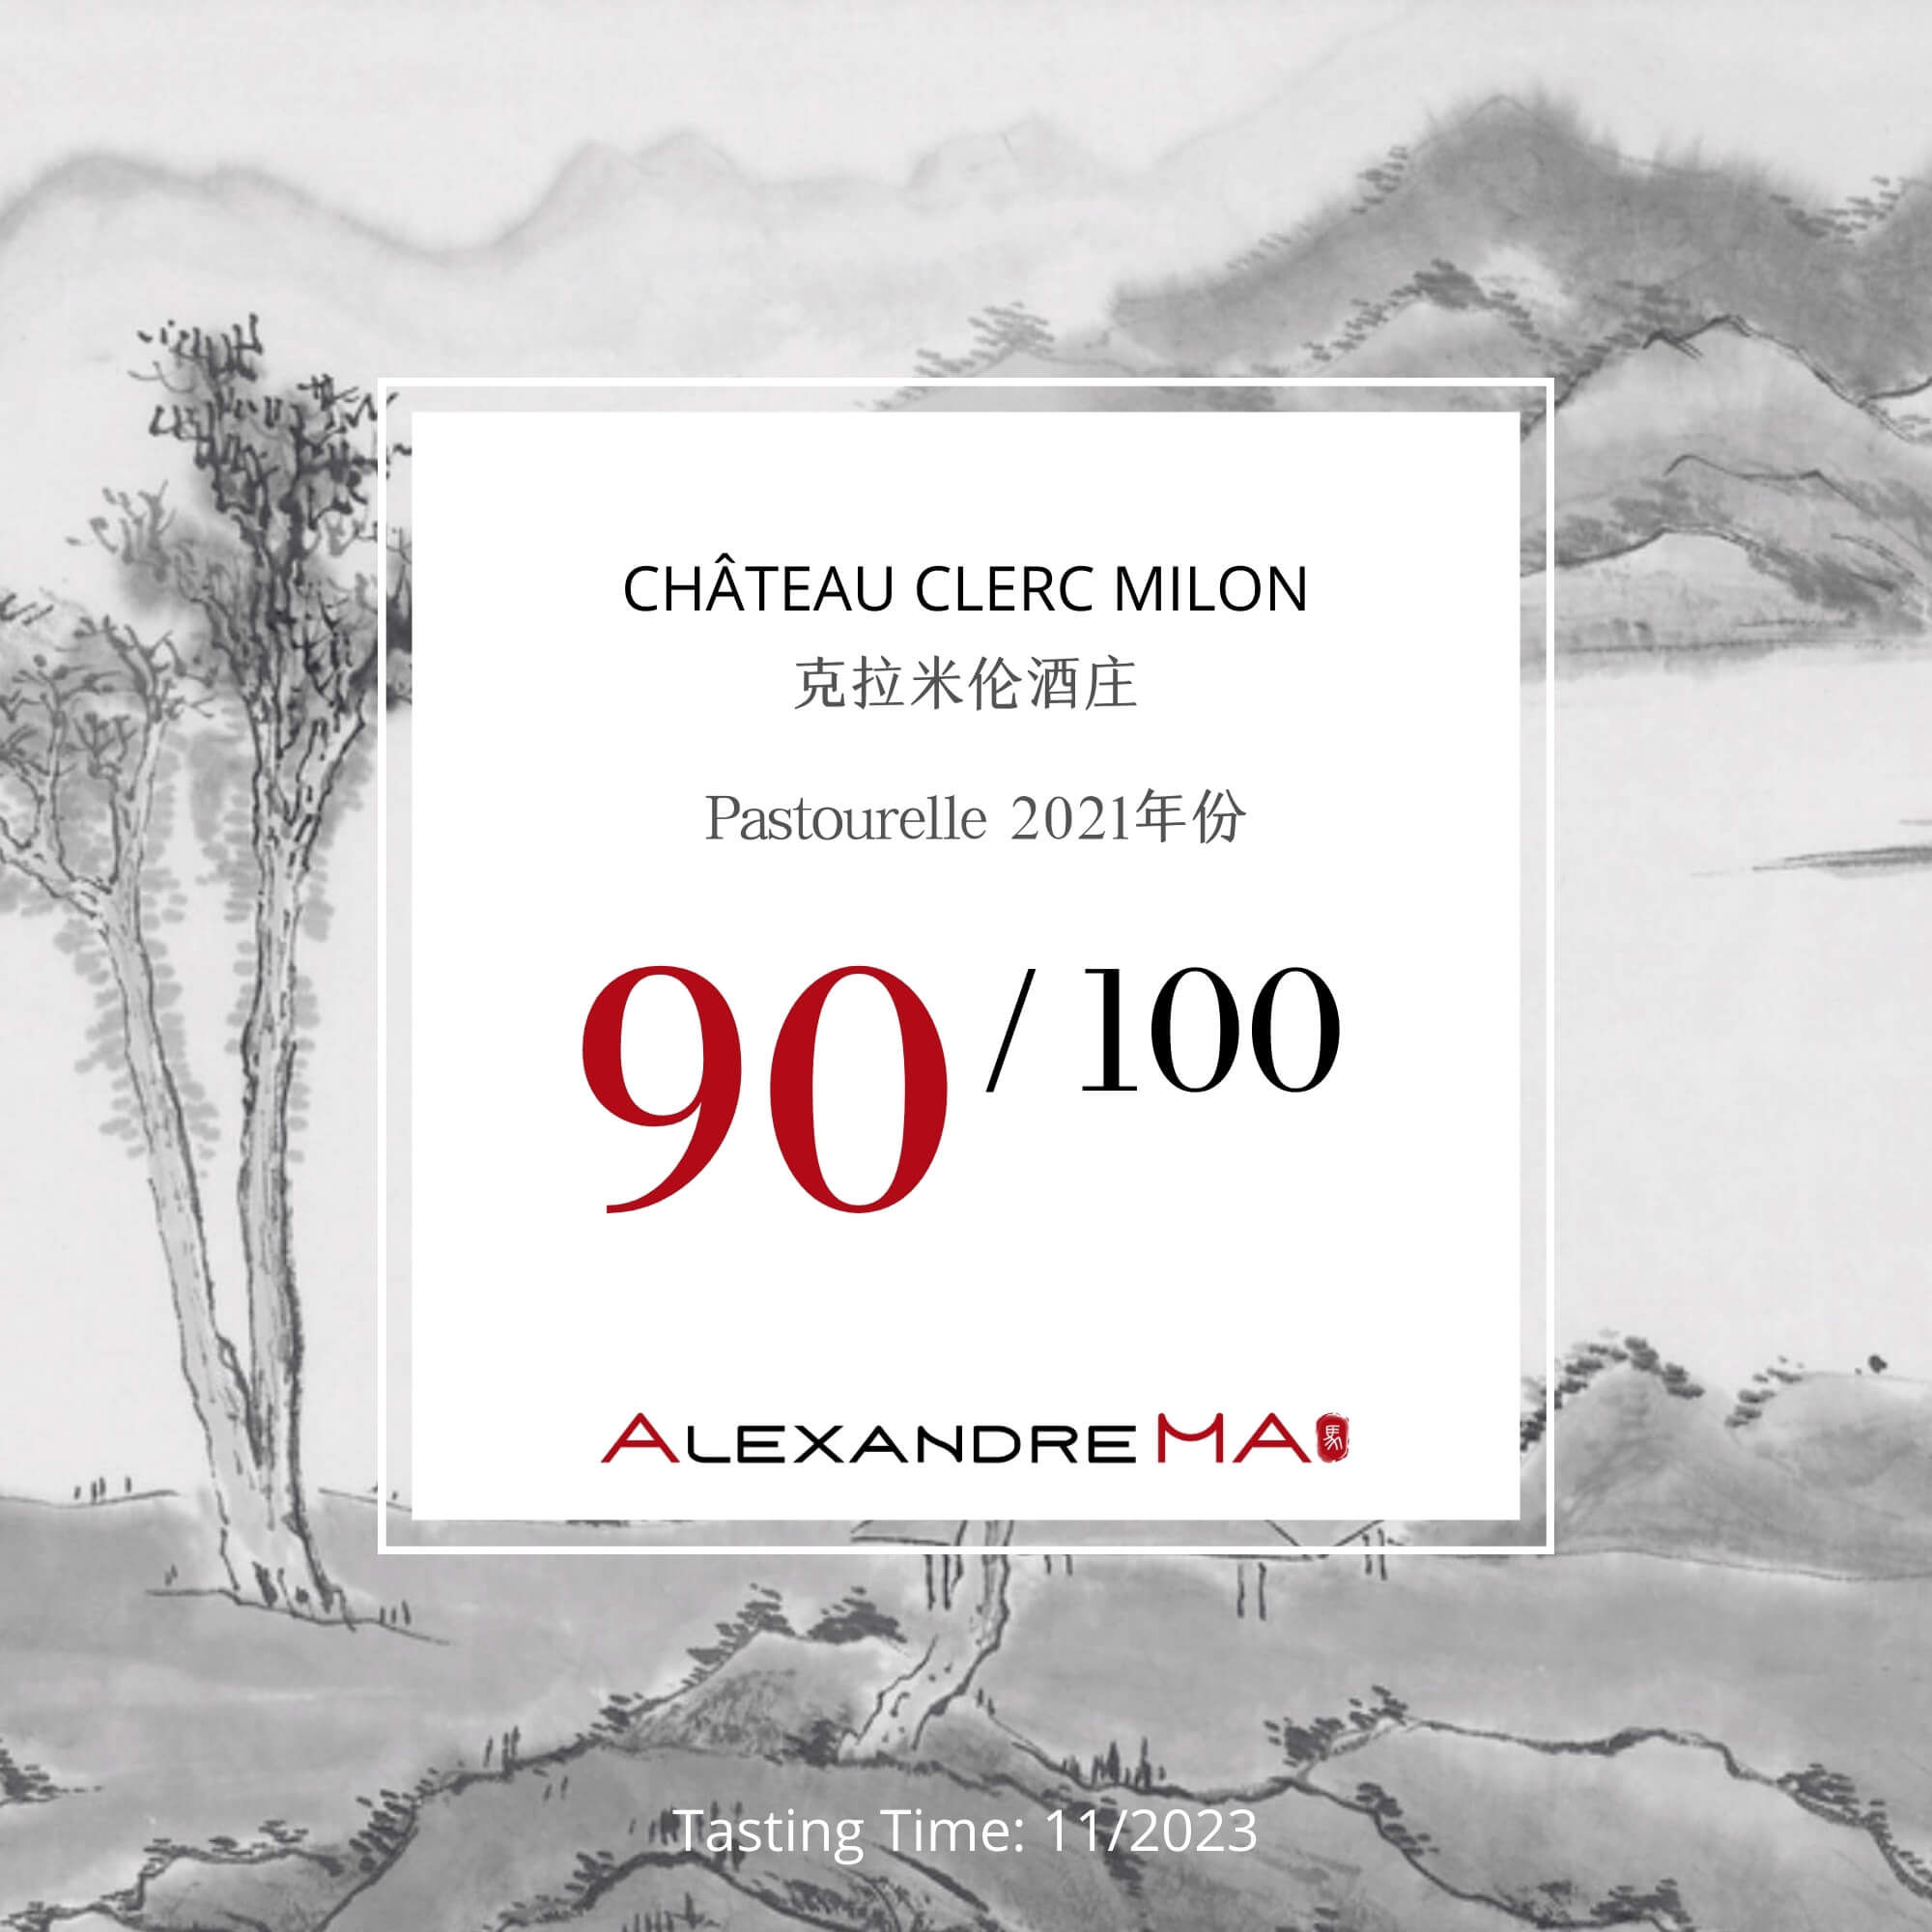 Château Clerc Milon-Pastourelle 2021-克拉米伦酒庄 - Alexandre Ma